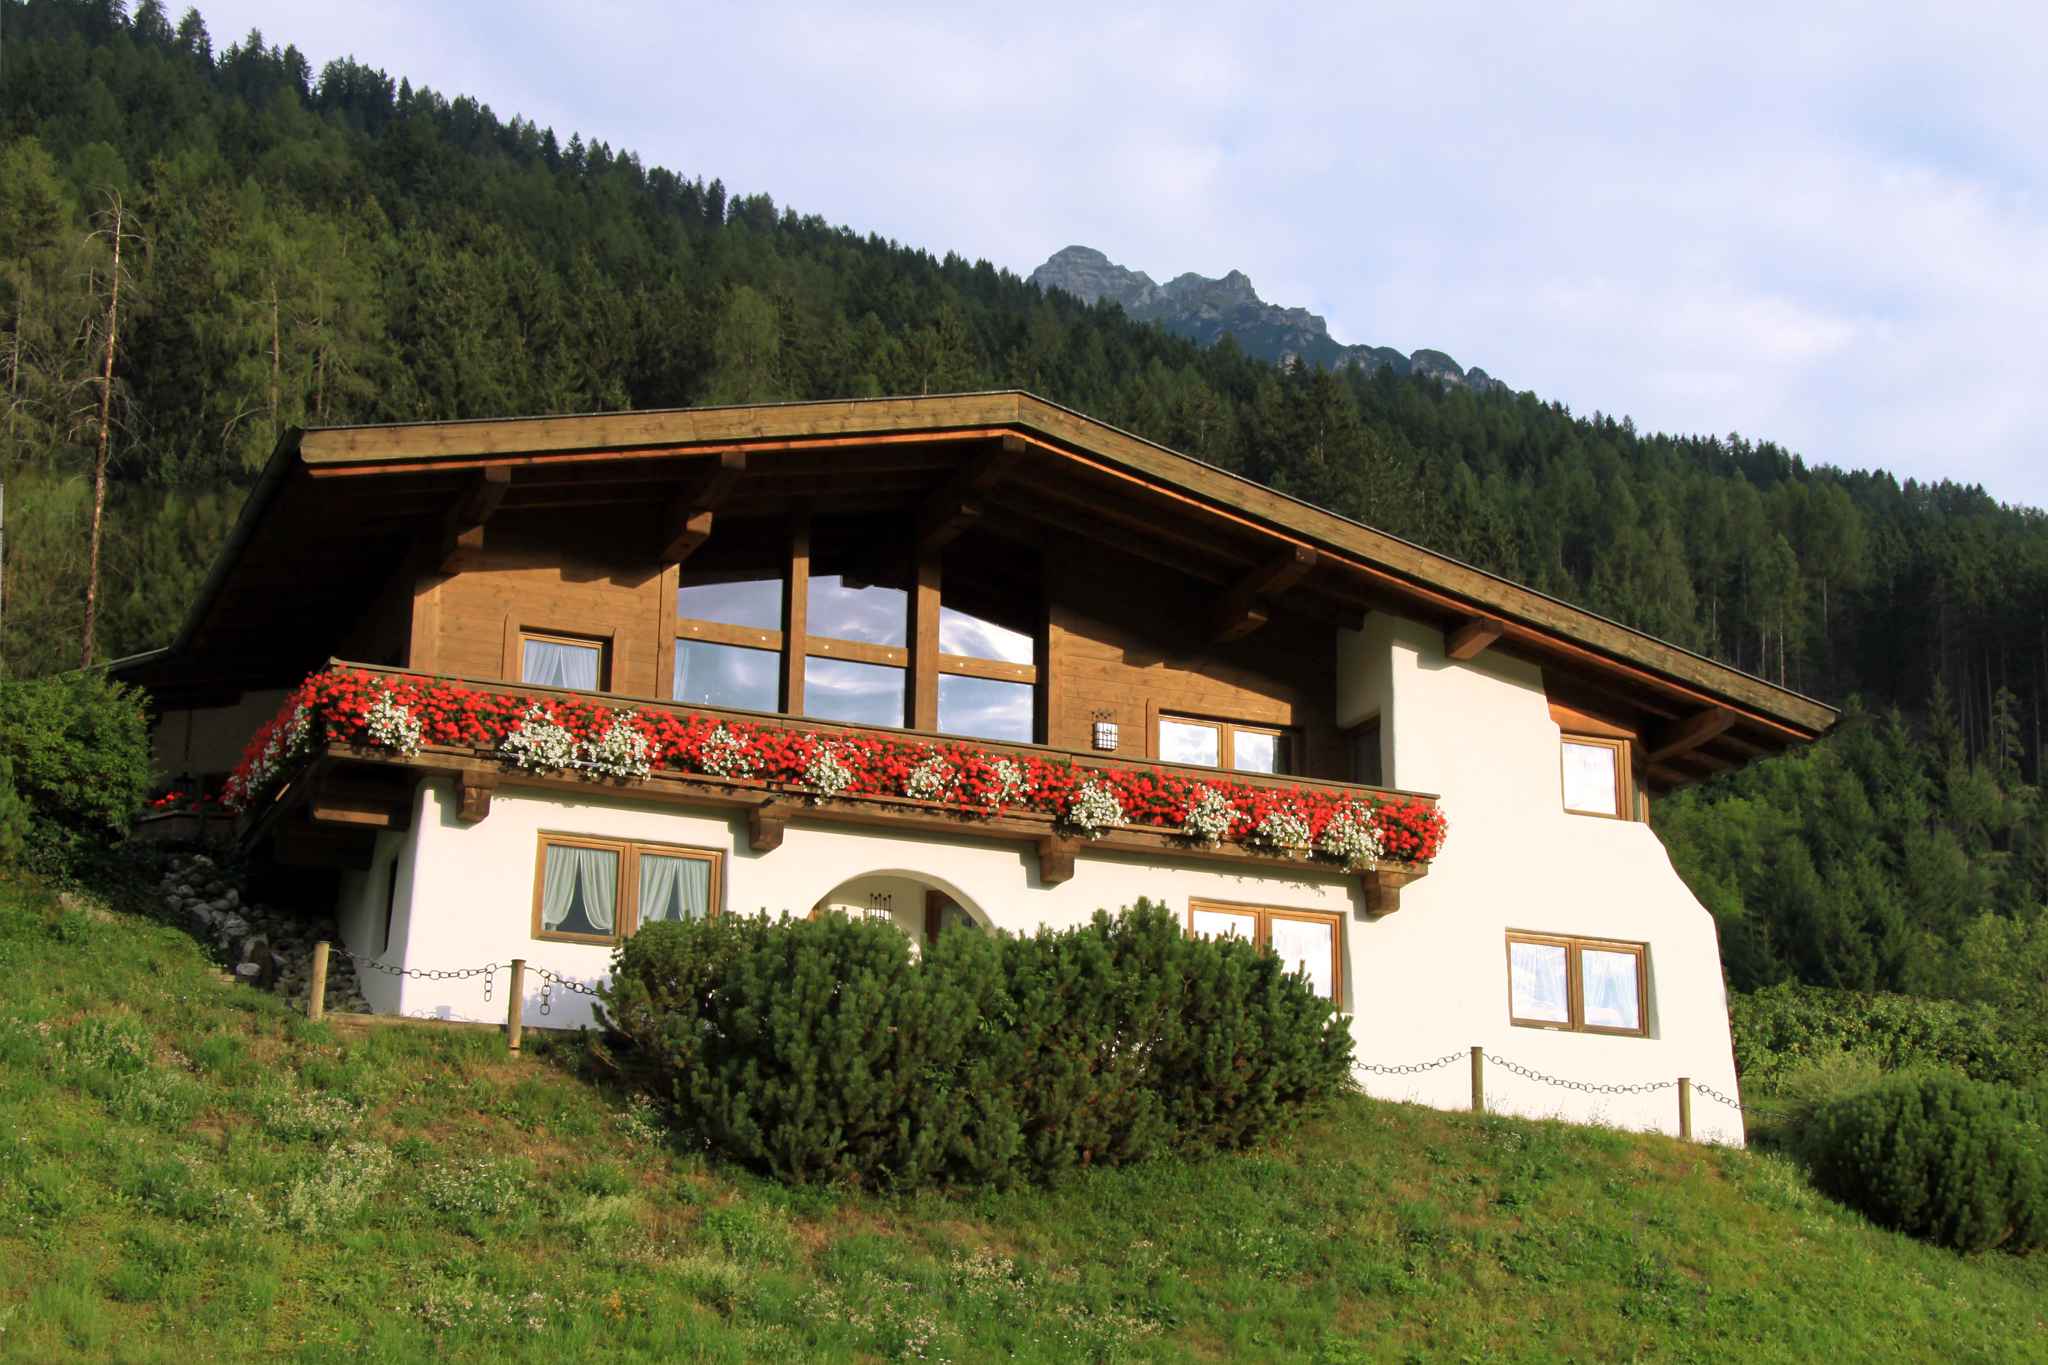 Ferienwohnung in zentraler ruhiger Lage (283751), Fulpmes, Stubaital, Tirol, Österreich, Bild 1